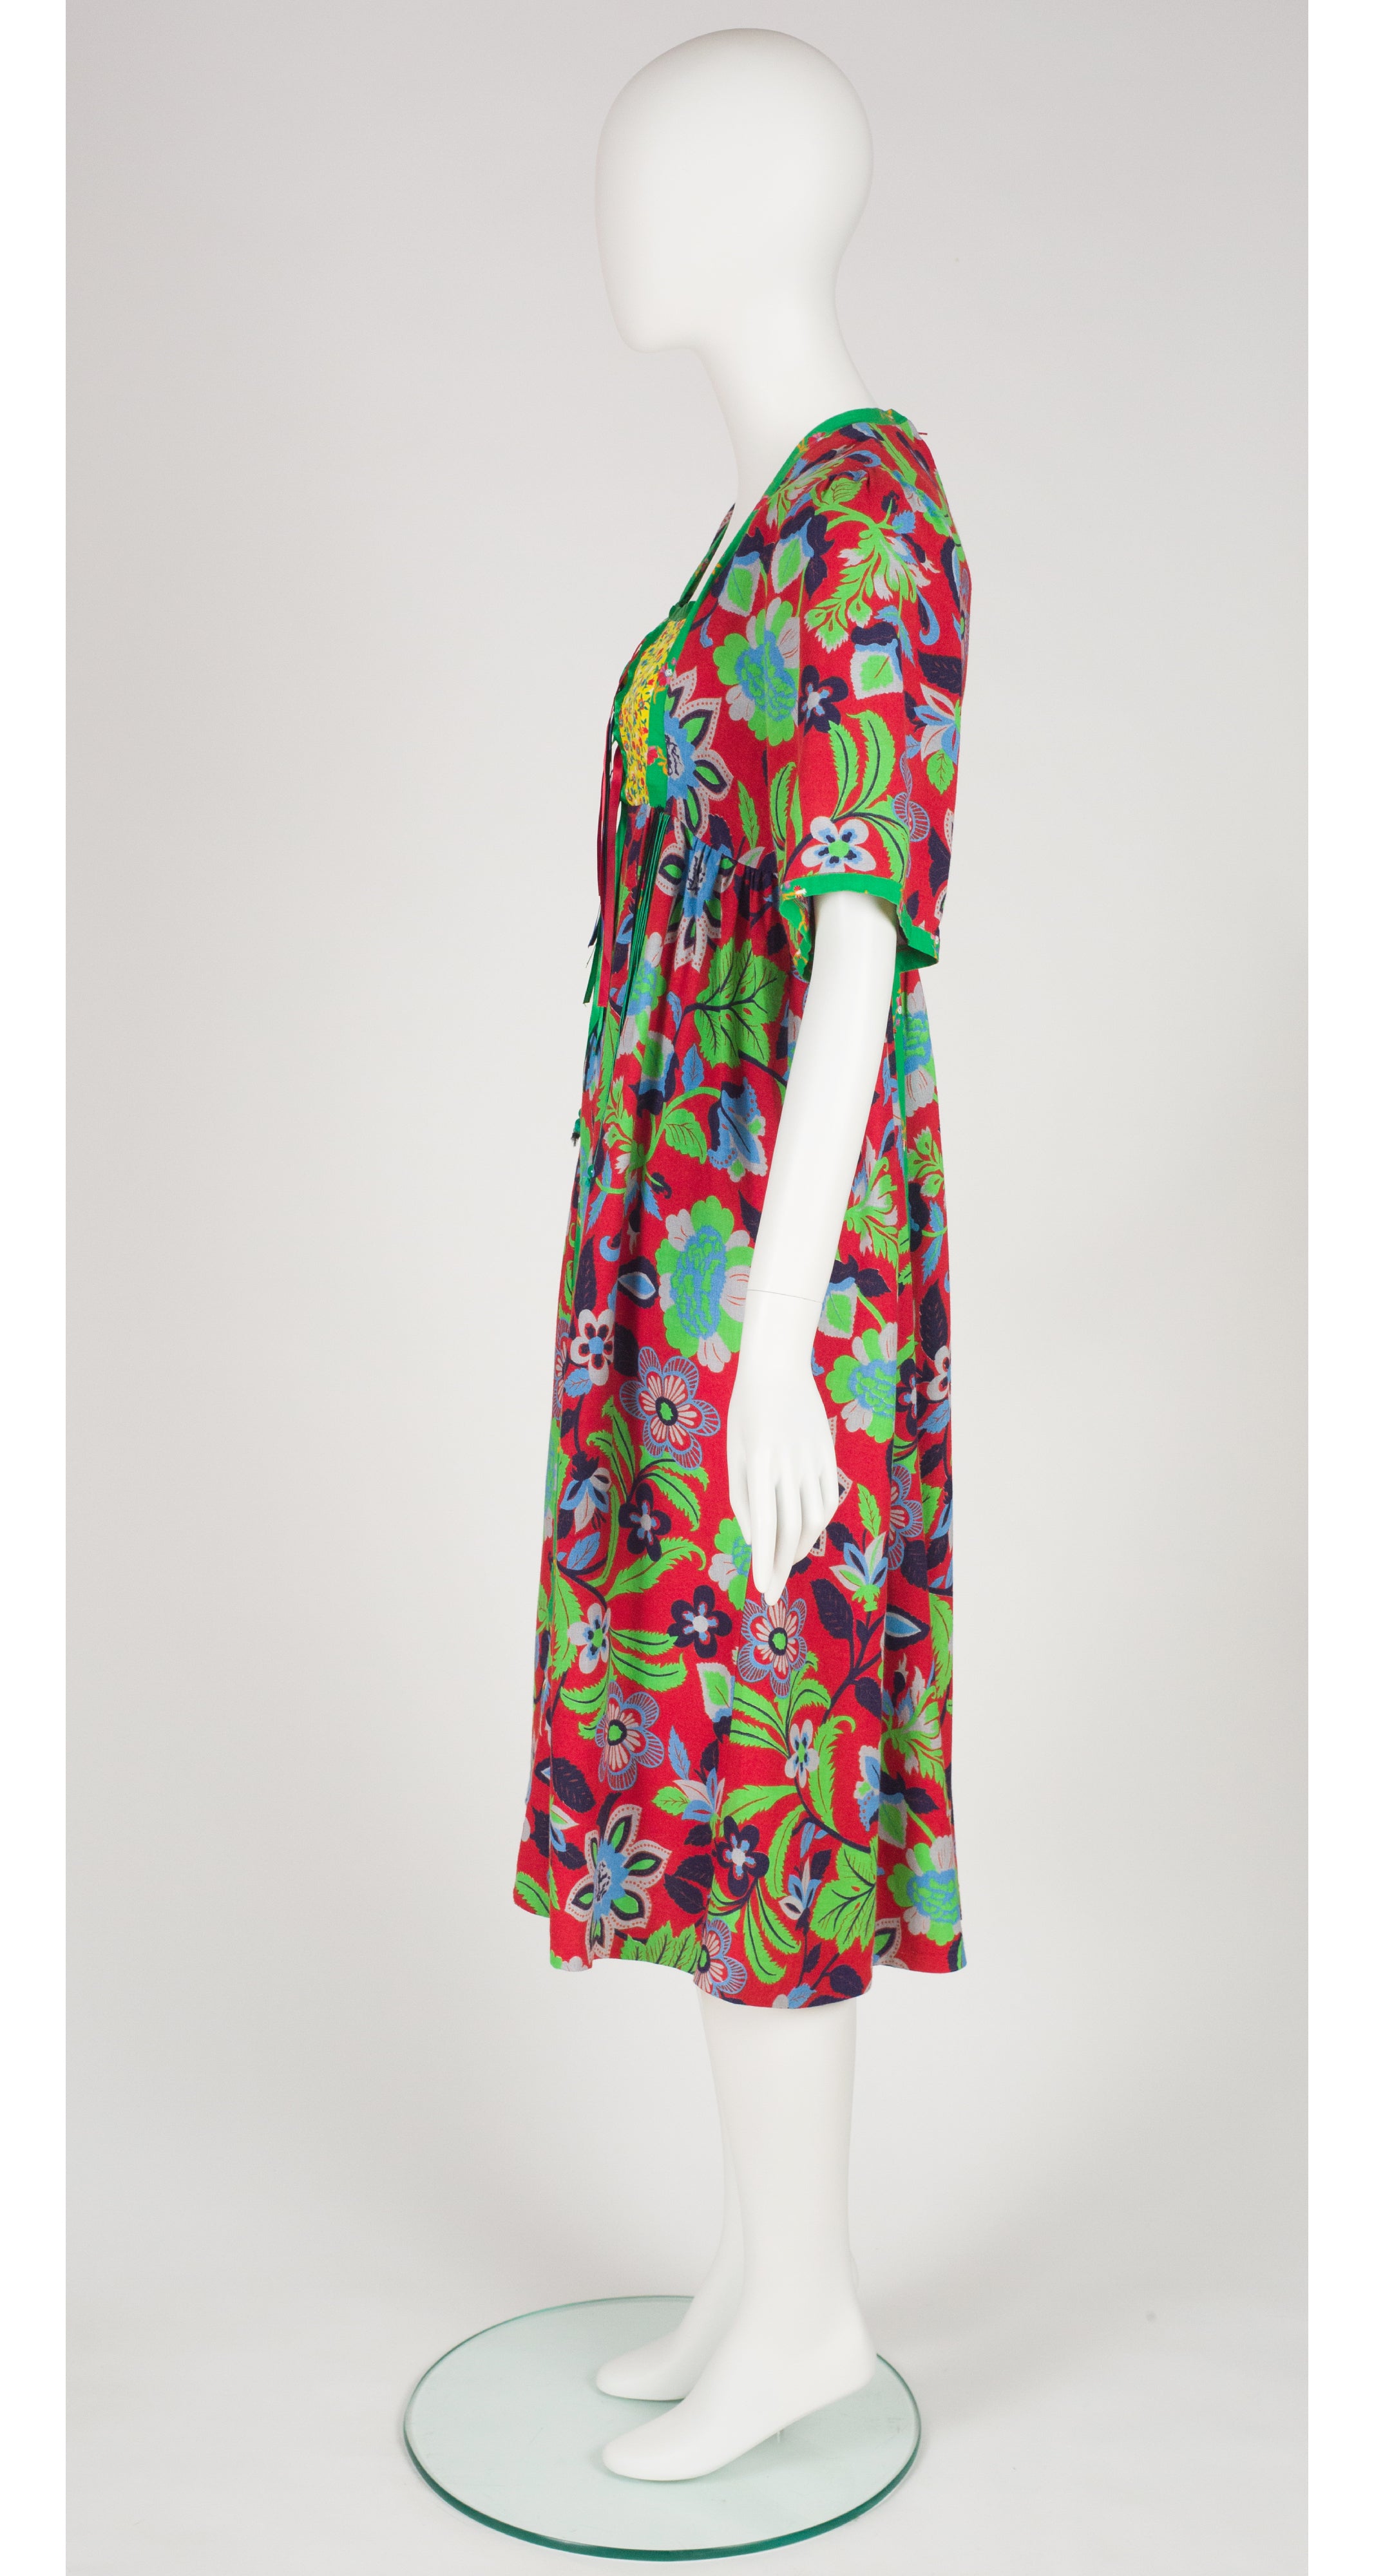 1970s Floral Mixed Print Lace-Up Tassel Bib Dress